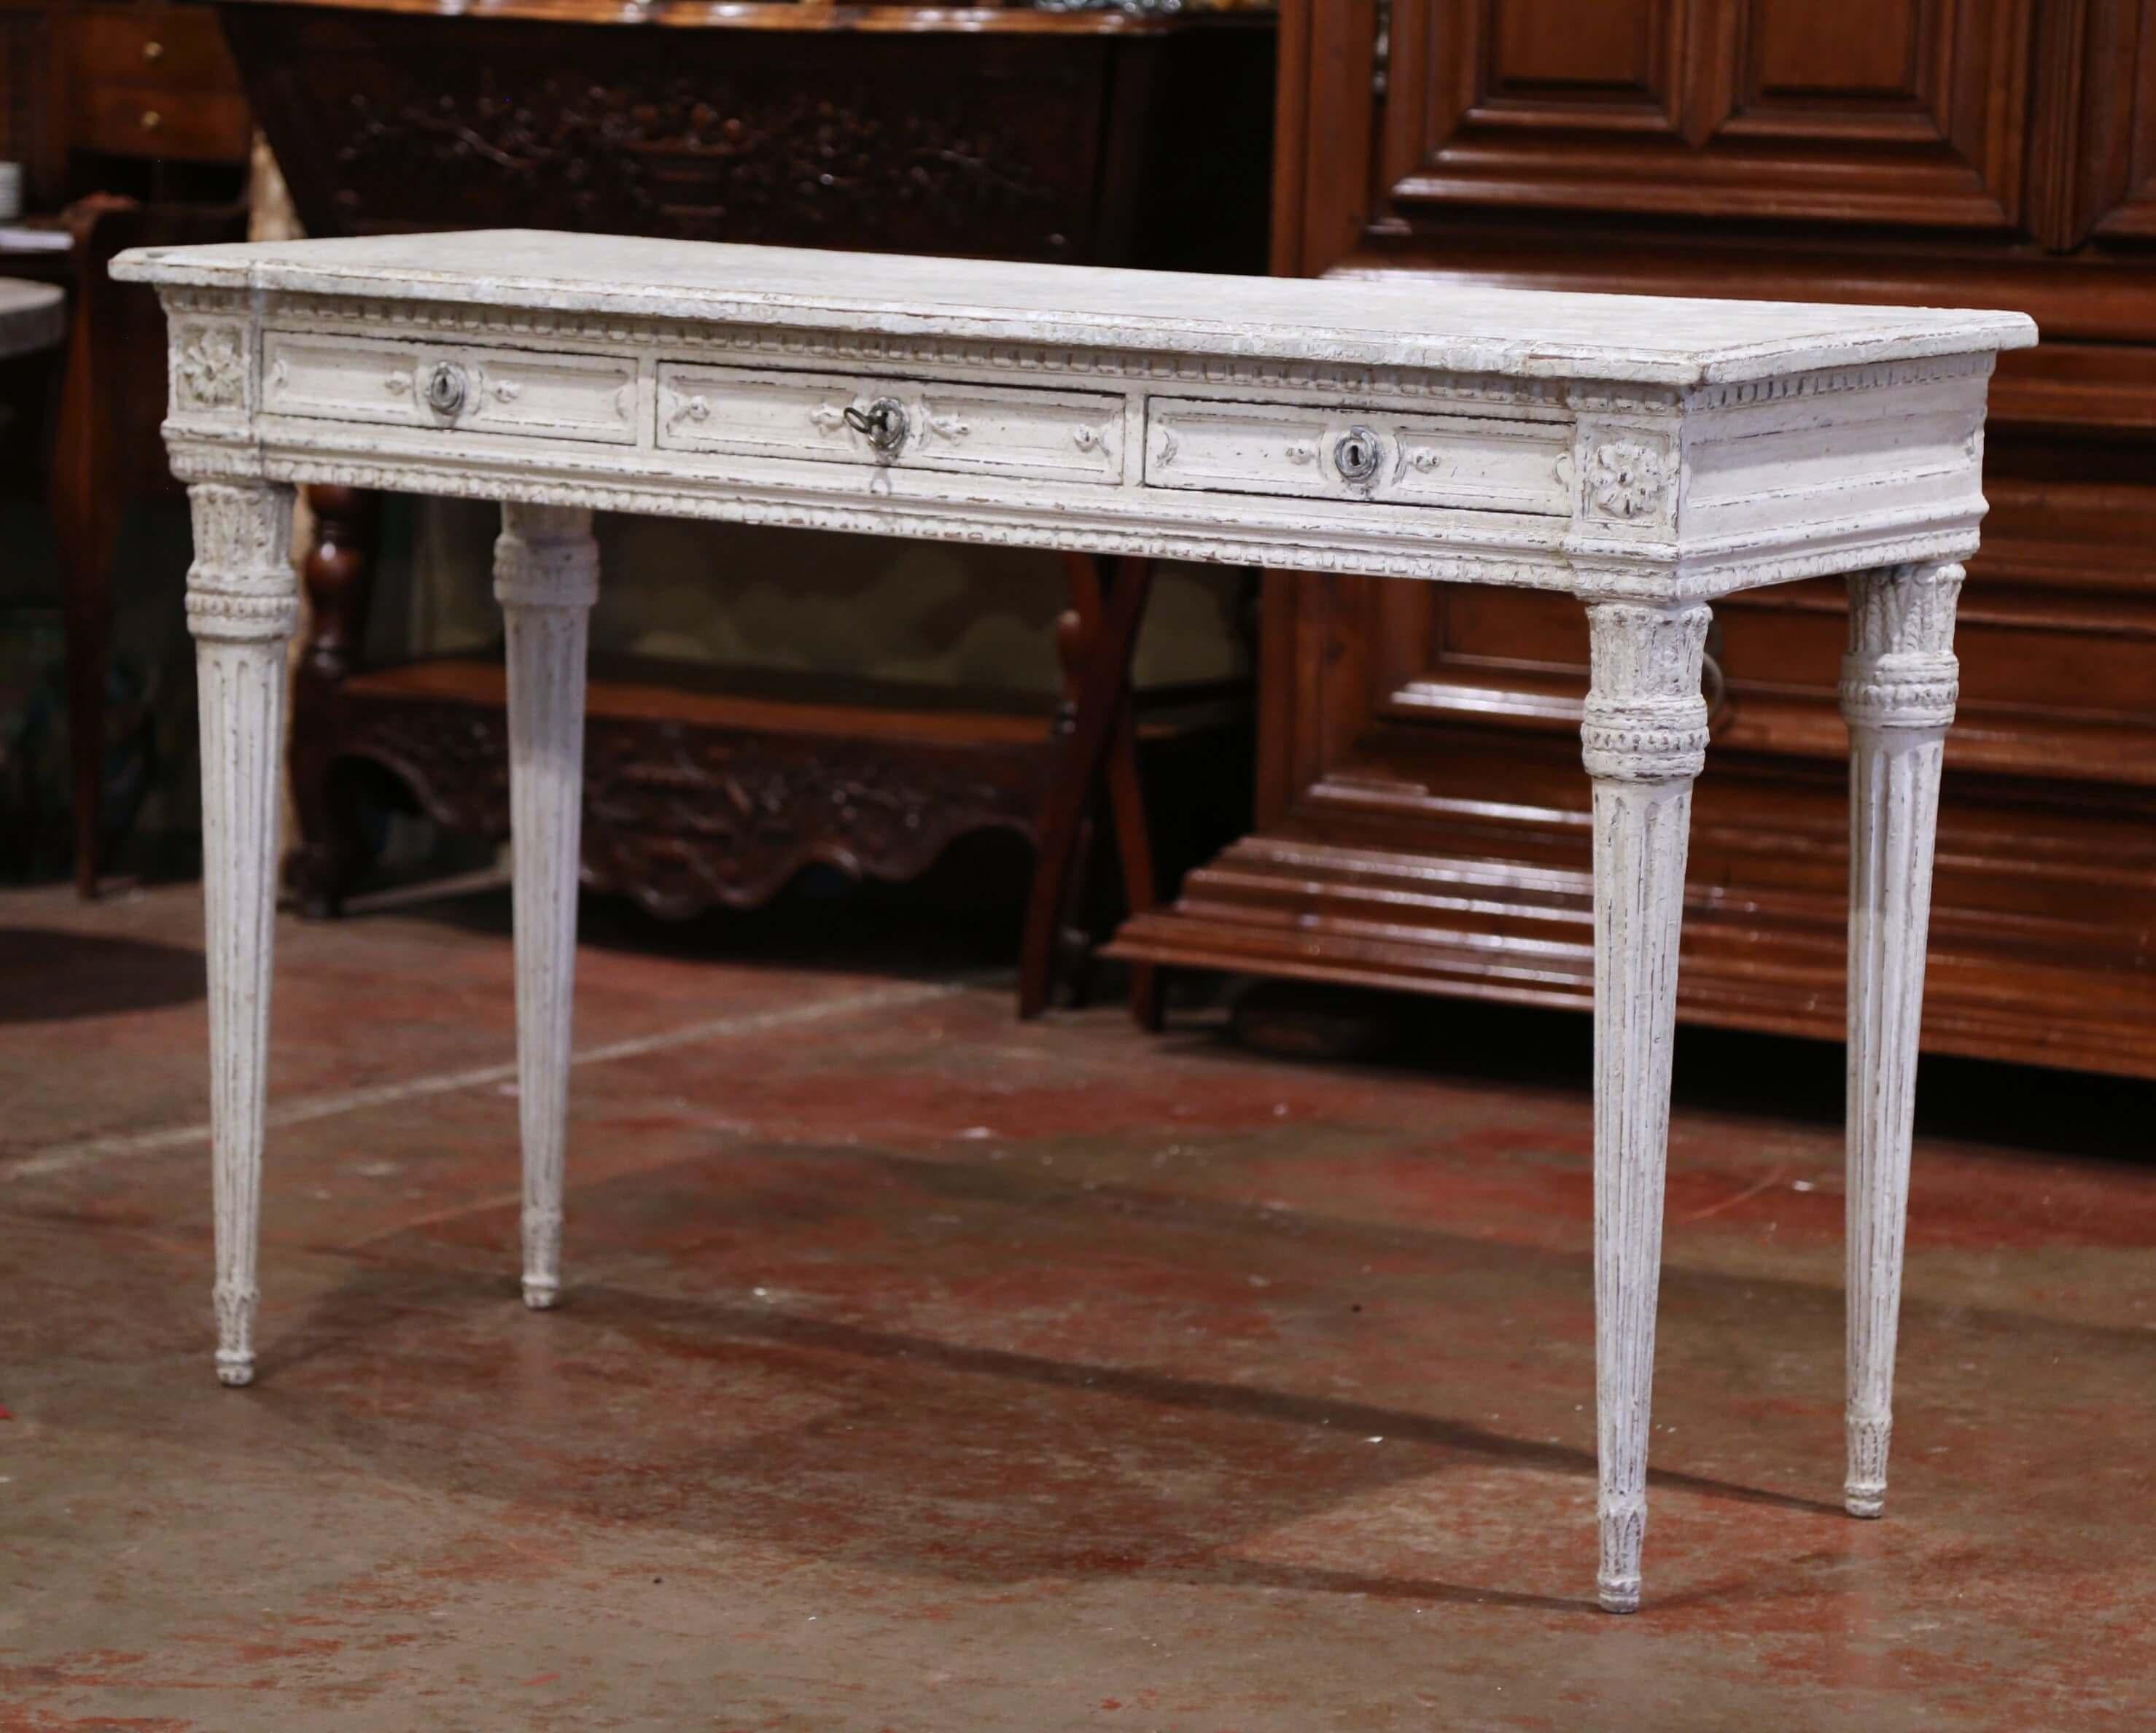 Diese elegante antike Konsole wurde um 1870 in Frankreich hergestellt. Der grau lackierte Tisch steht auf geschnitzten und konisch zulaufenden Beinen über einer geschnitzten Schürze, die an jeder Ecke mit Blumenmedaillons verziert ist. Die Konsole